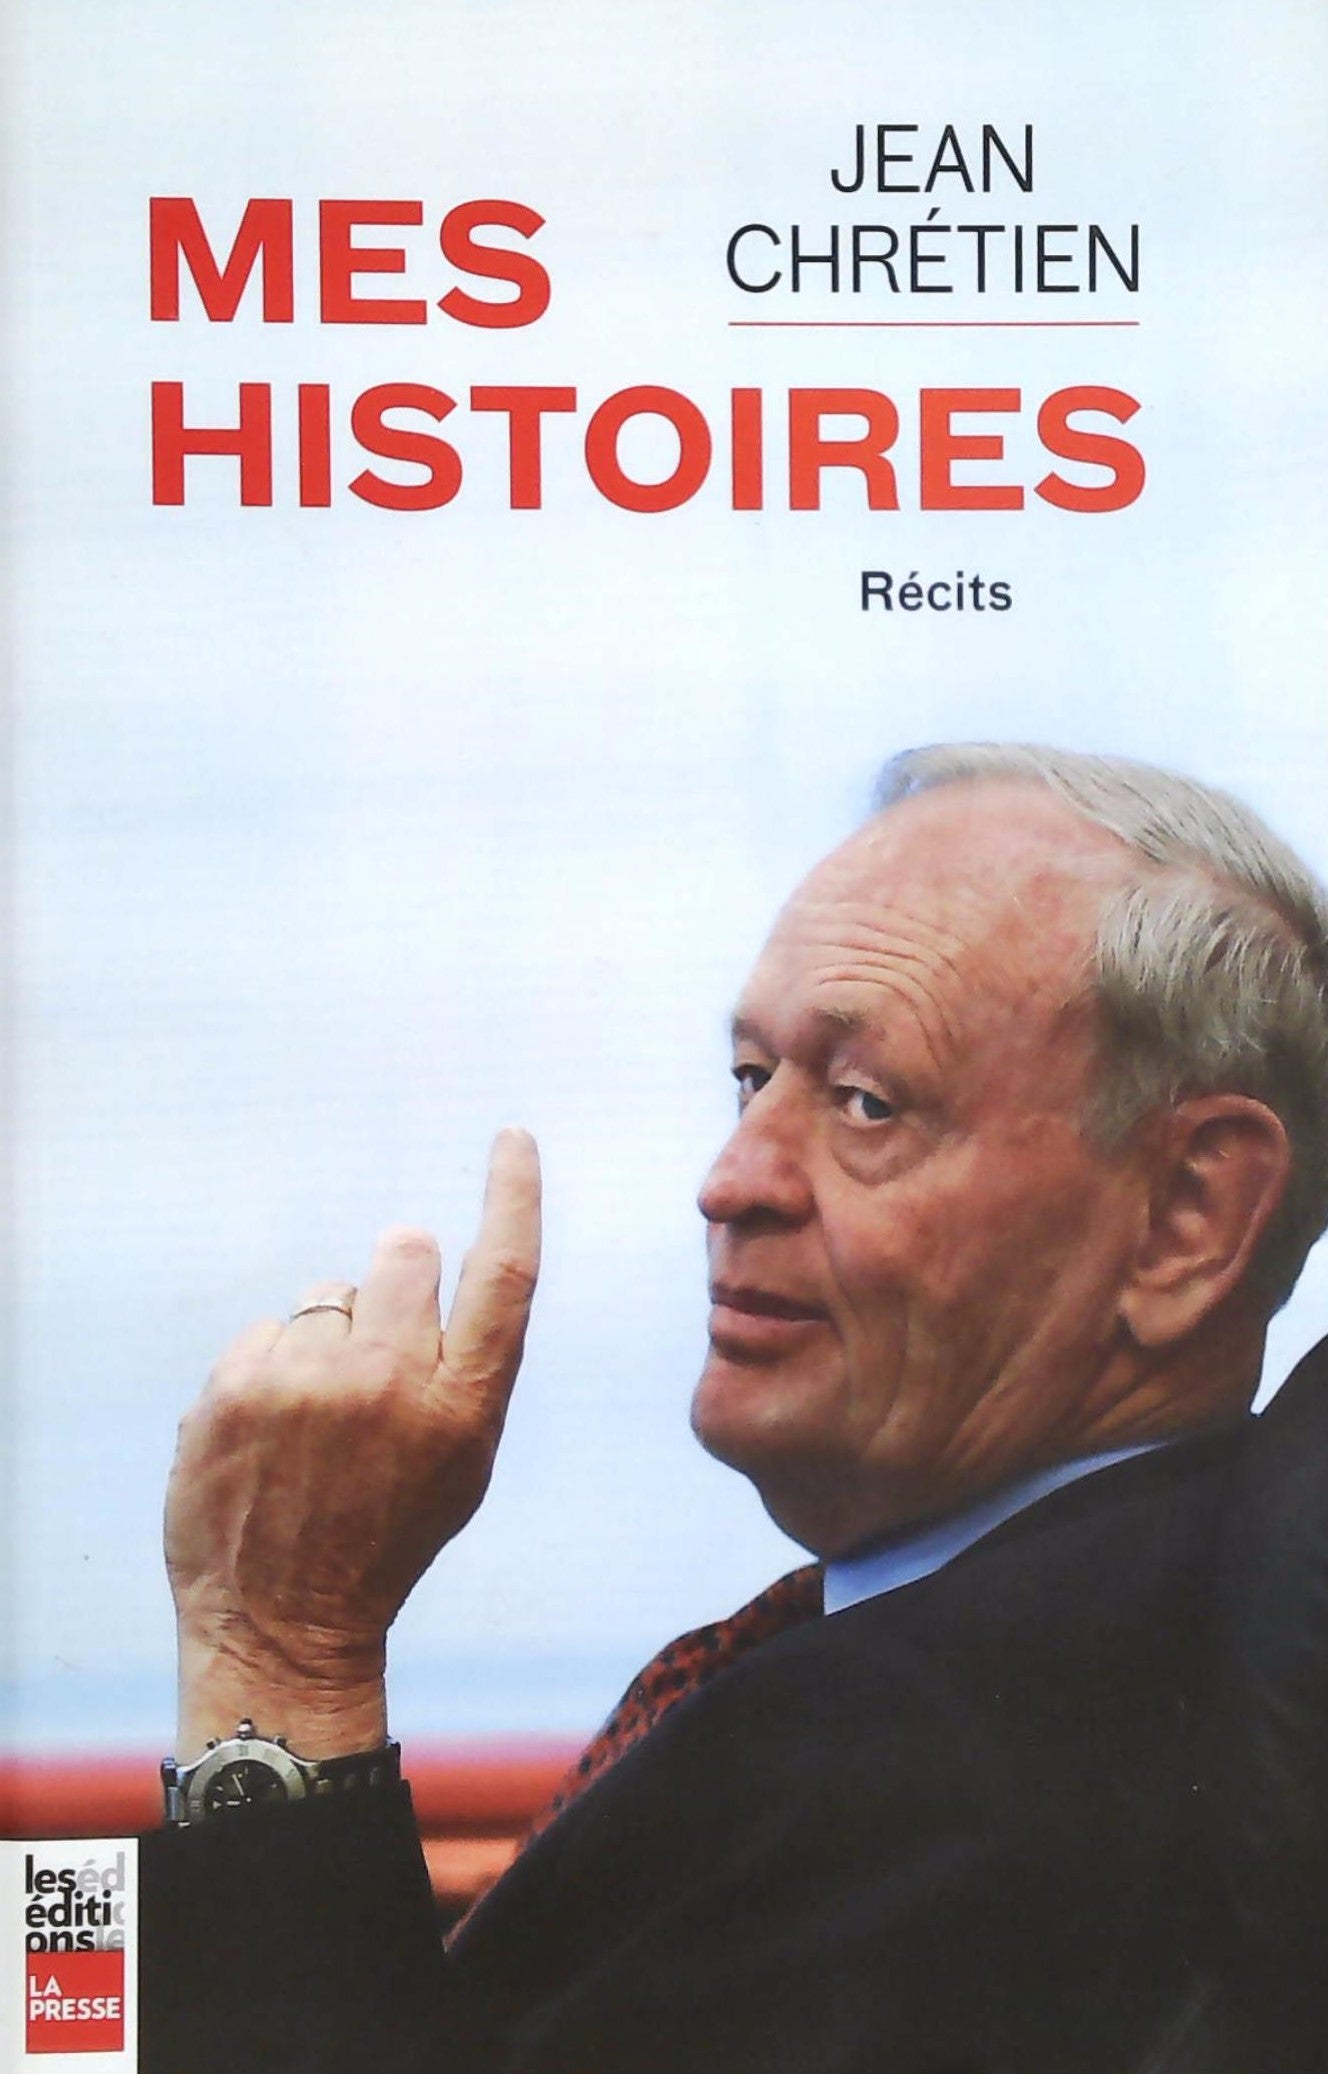 Livre ISBN 289705705X Mes histoires (Jean Chrétien)